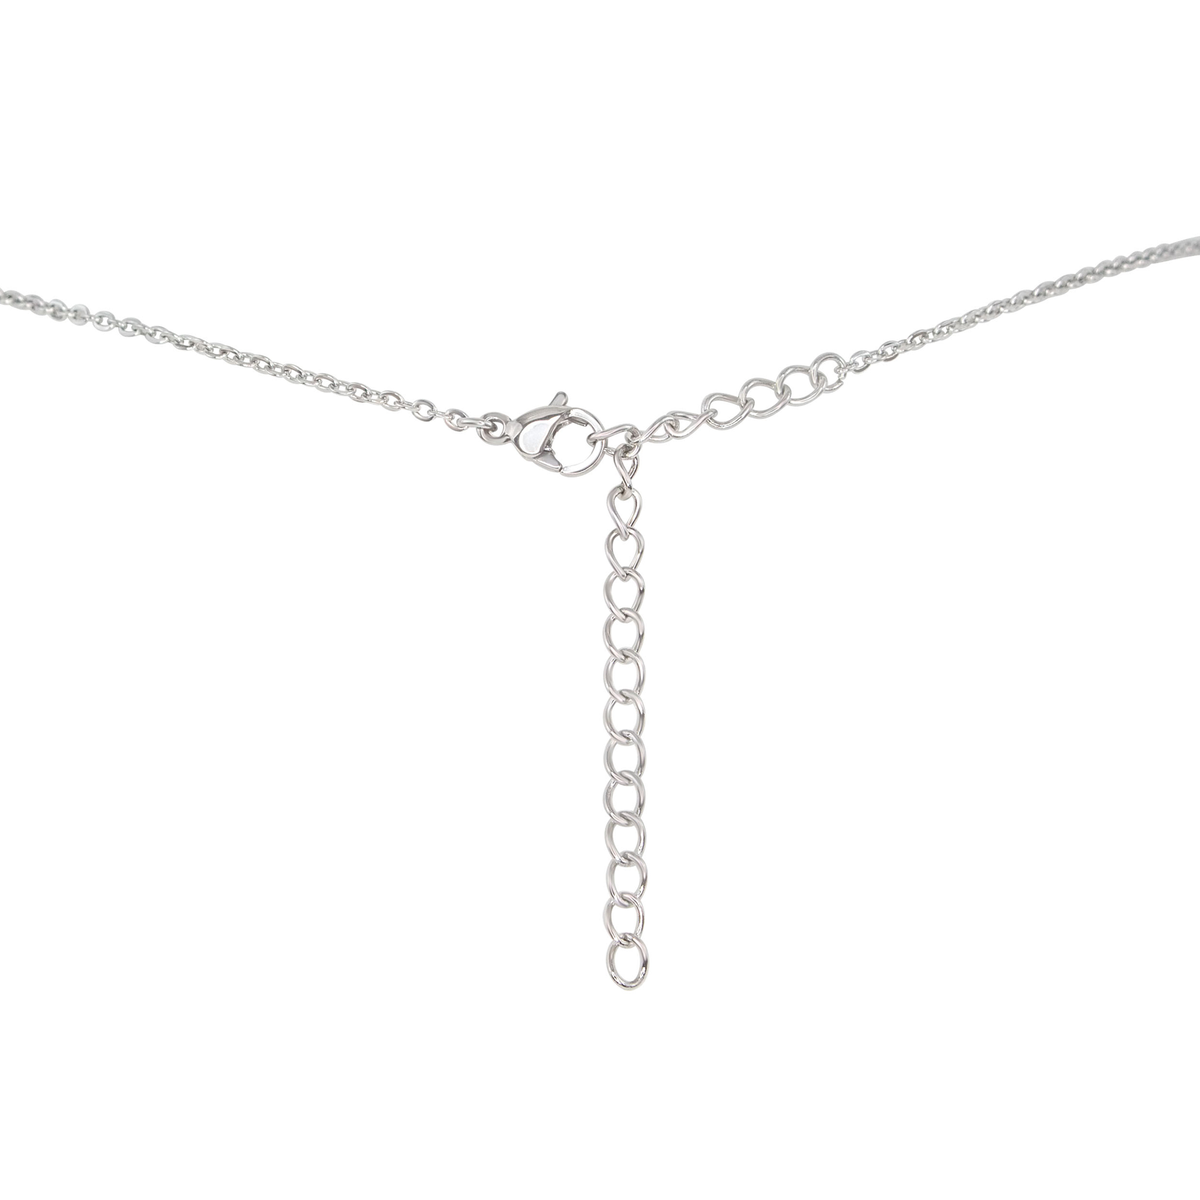 Tiny Raw Citrine Pendant Necklace